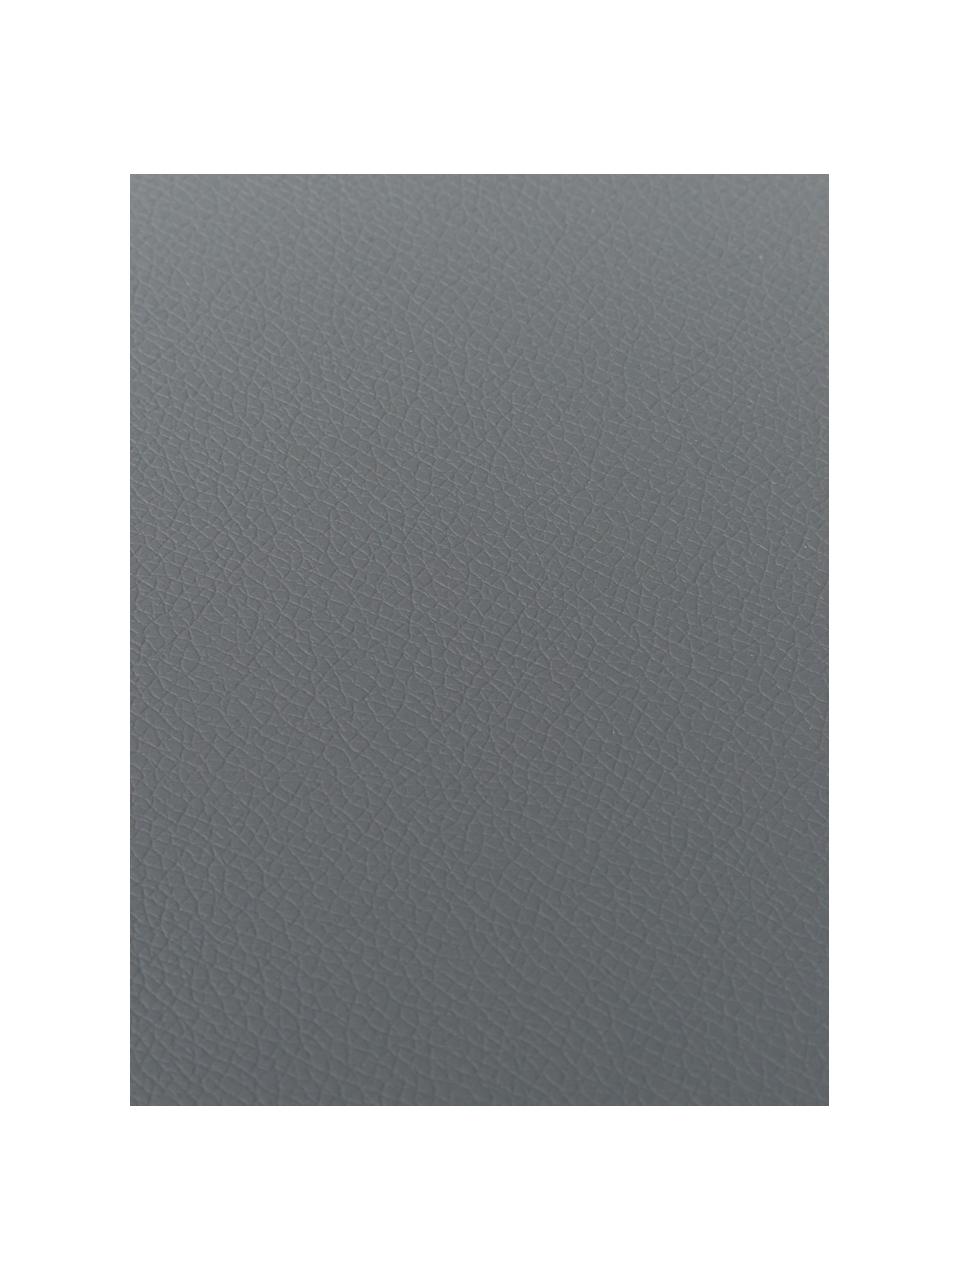 Tovaglietta americana rotonda in similpelle Pik 2 pz, Plastica (PVC), Grigio scuro, Ø 38 cm